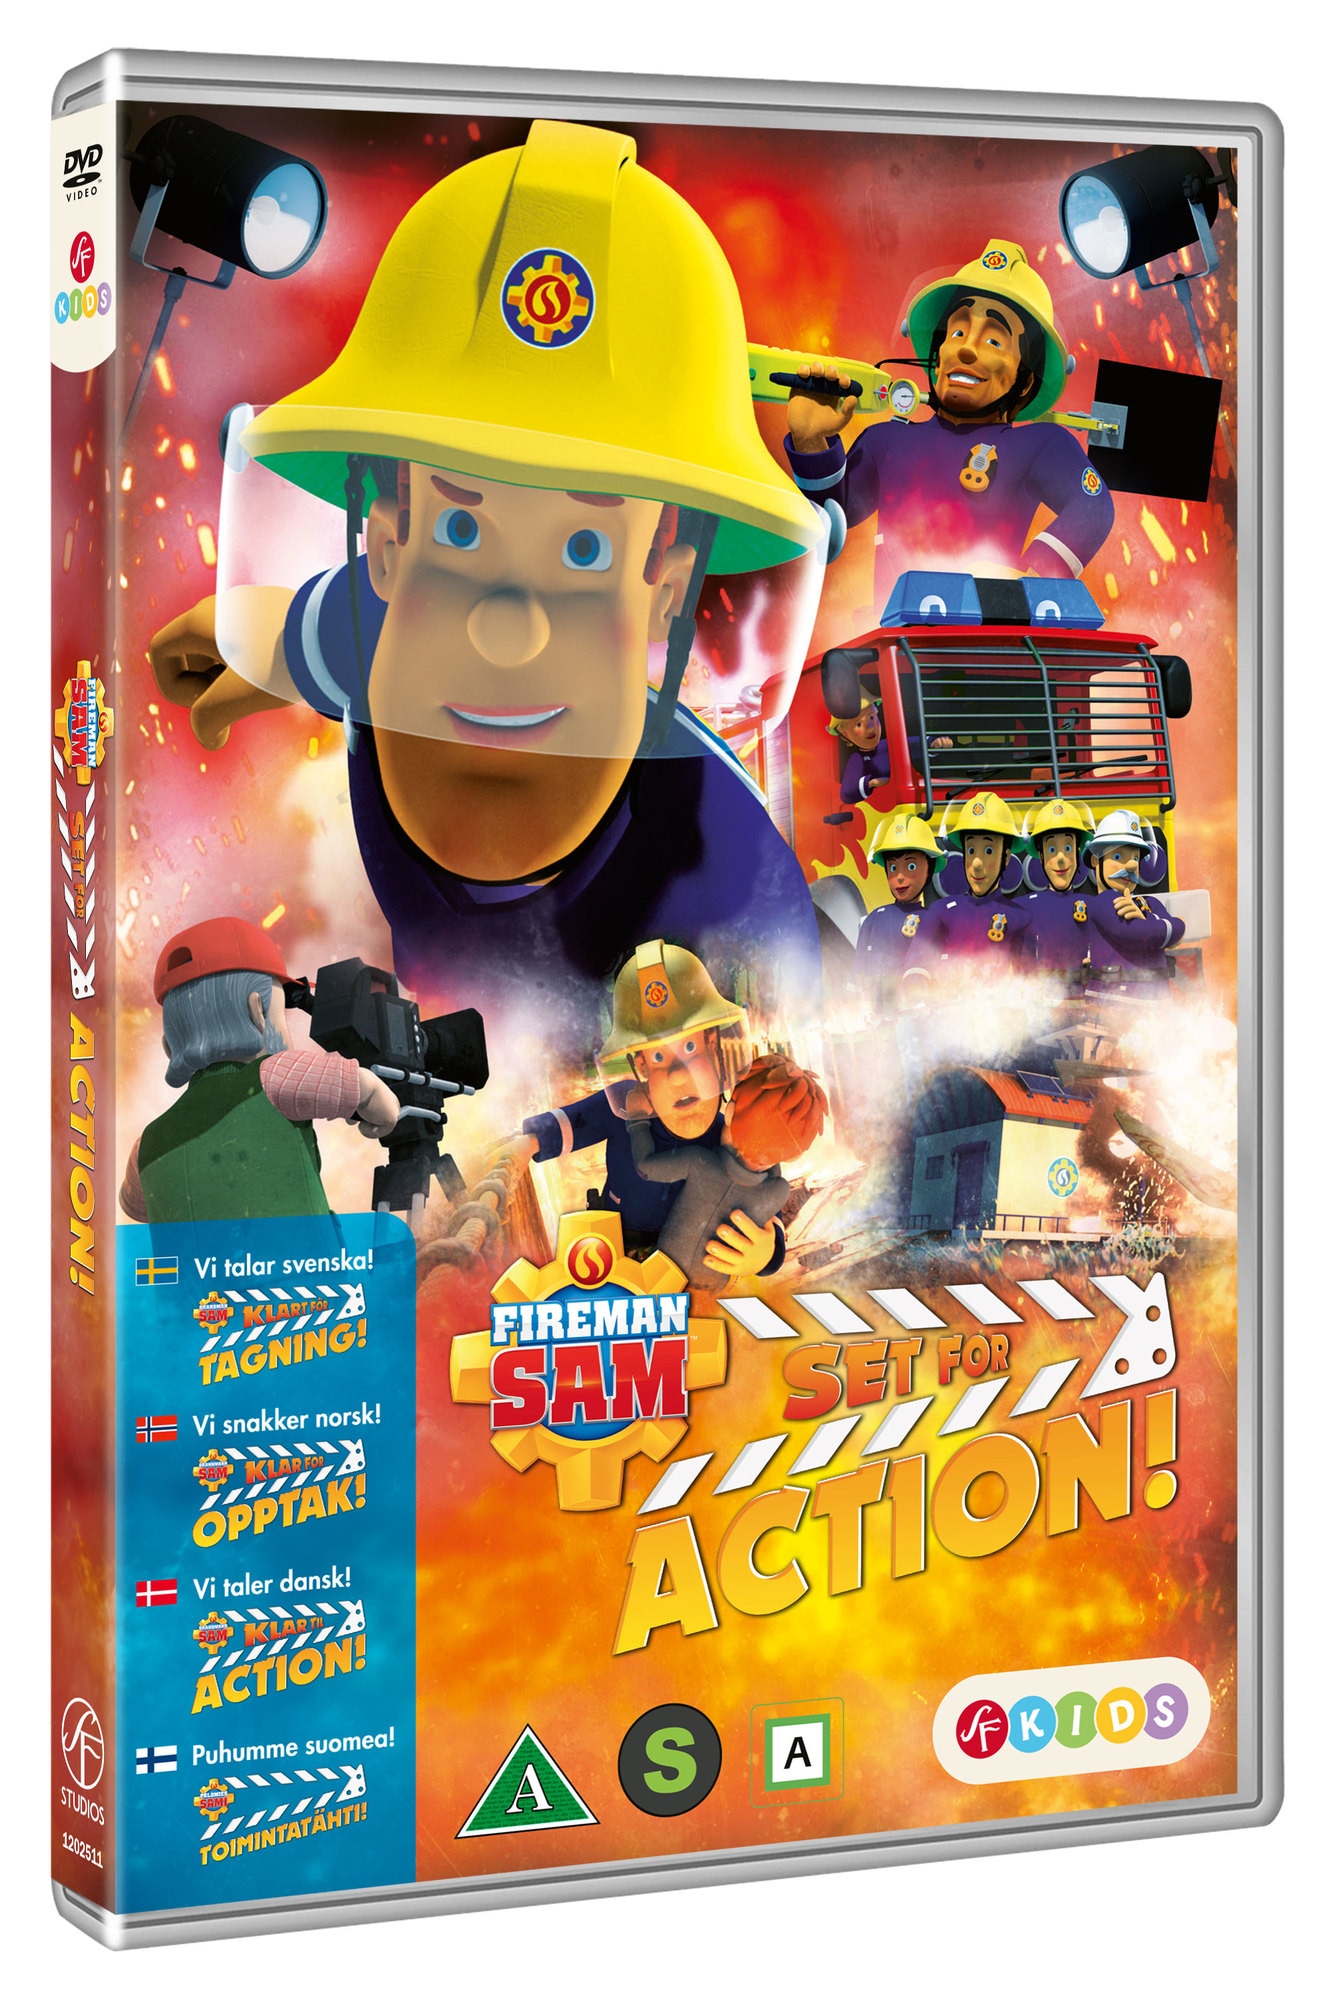 FIREMAN SAM: SET FOR ACTION! (DVD) | Elgiganten